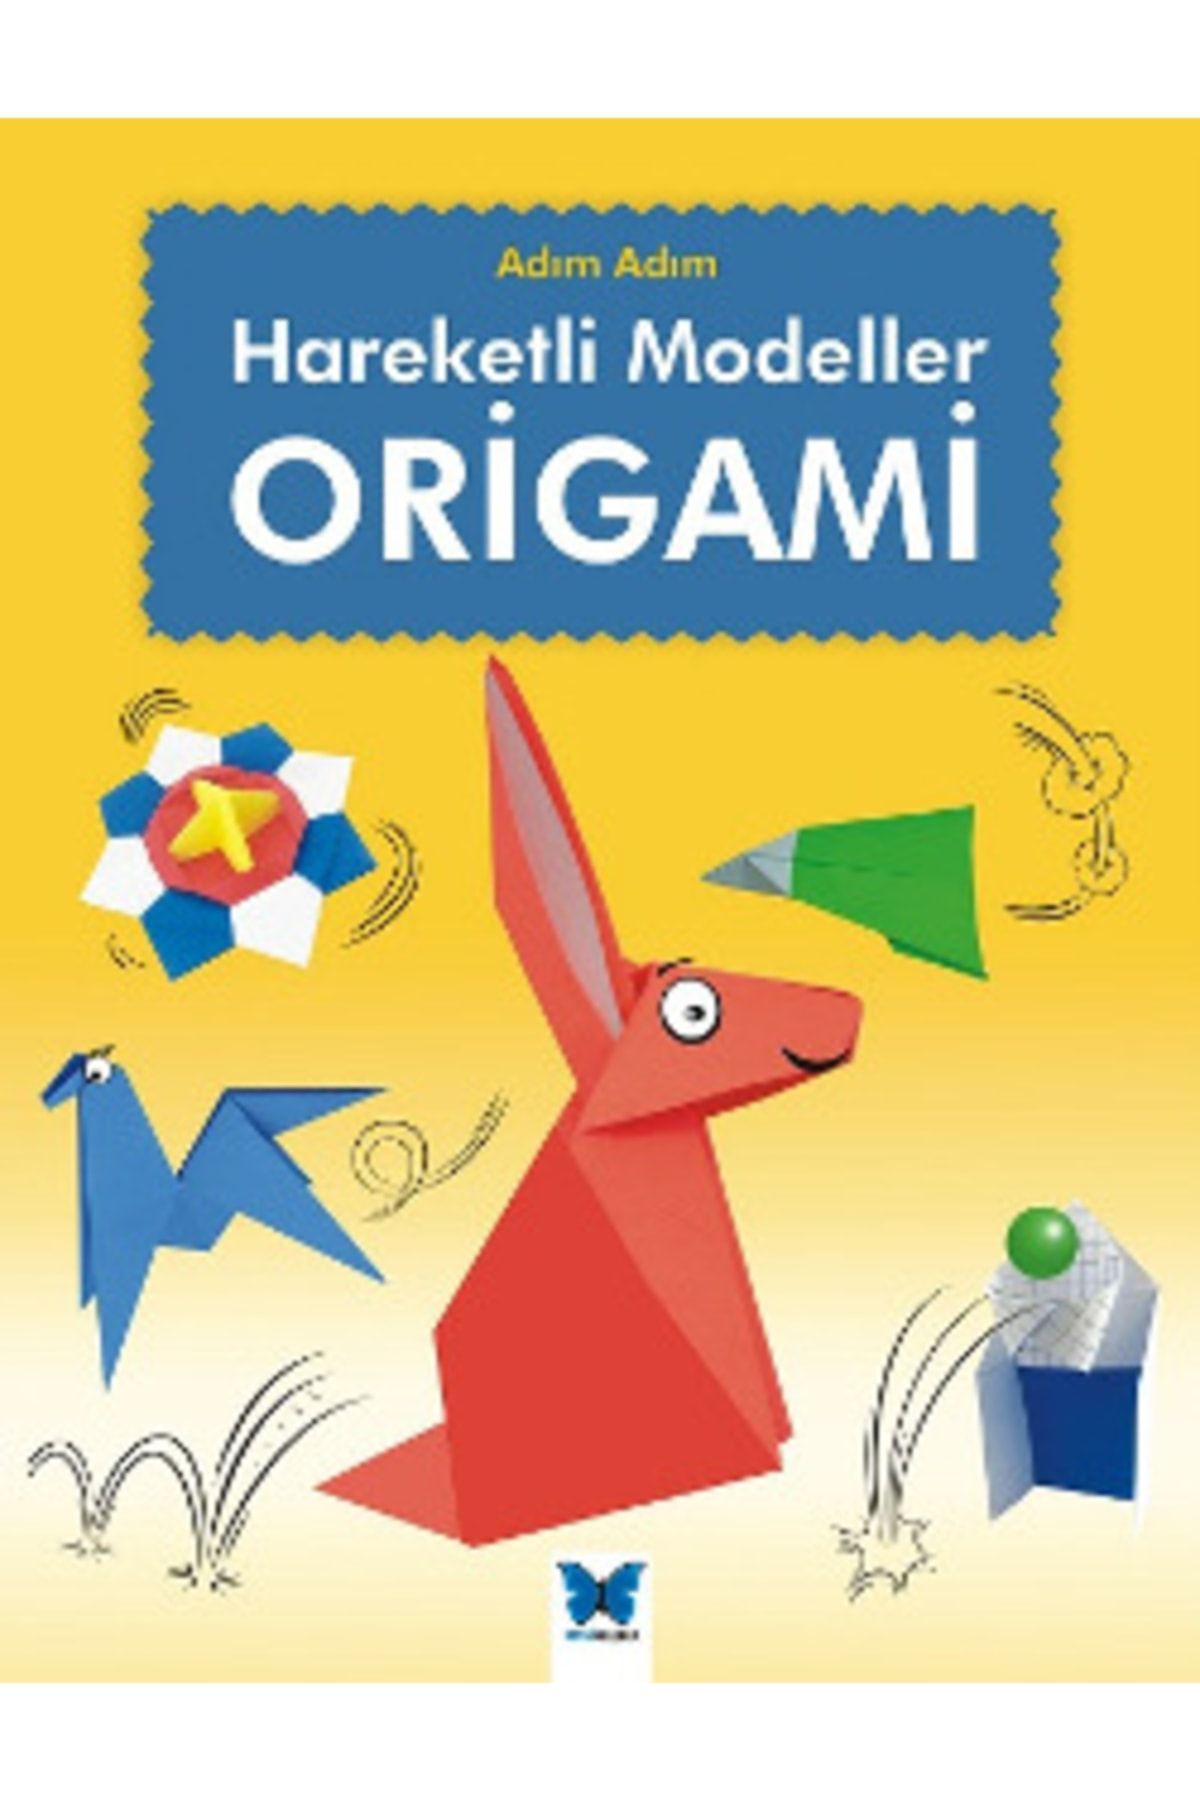 Mavi Kelebek Yayınları Origami: Adım Adım Hareketli Modeller Joe Fullman - Joe Fullman